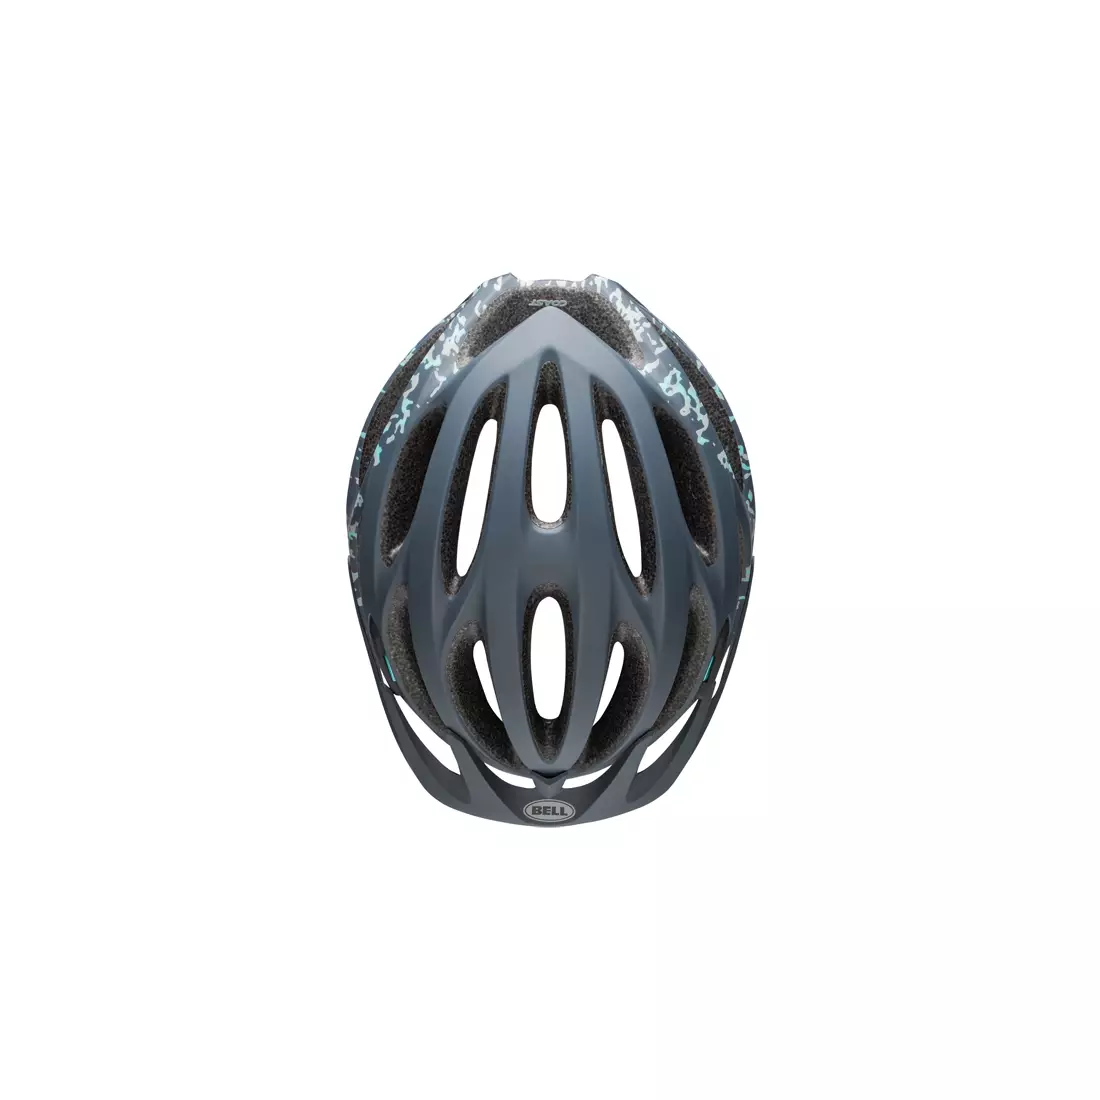 BELL MTB COAST JOY RIDE MIPS BEL-7088749 dámska cyklistická prilba matný olovnatý kameň